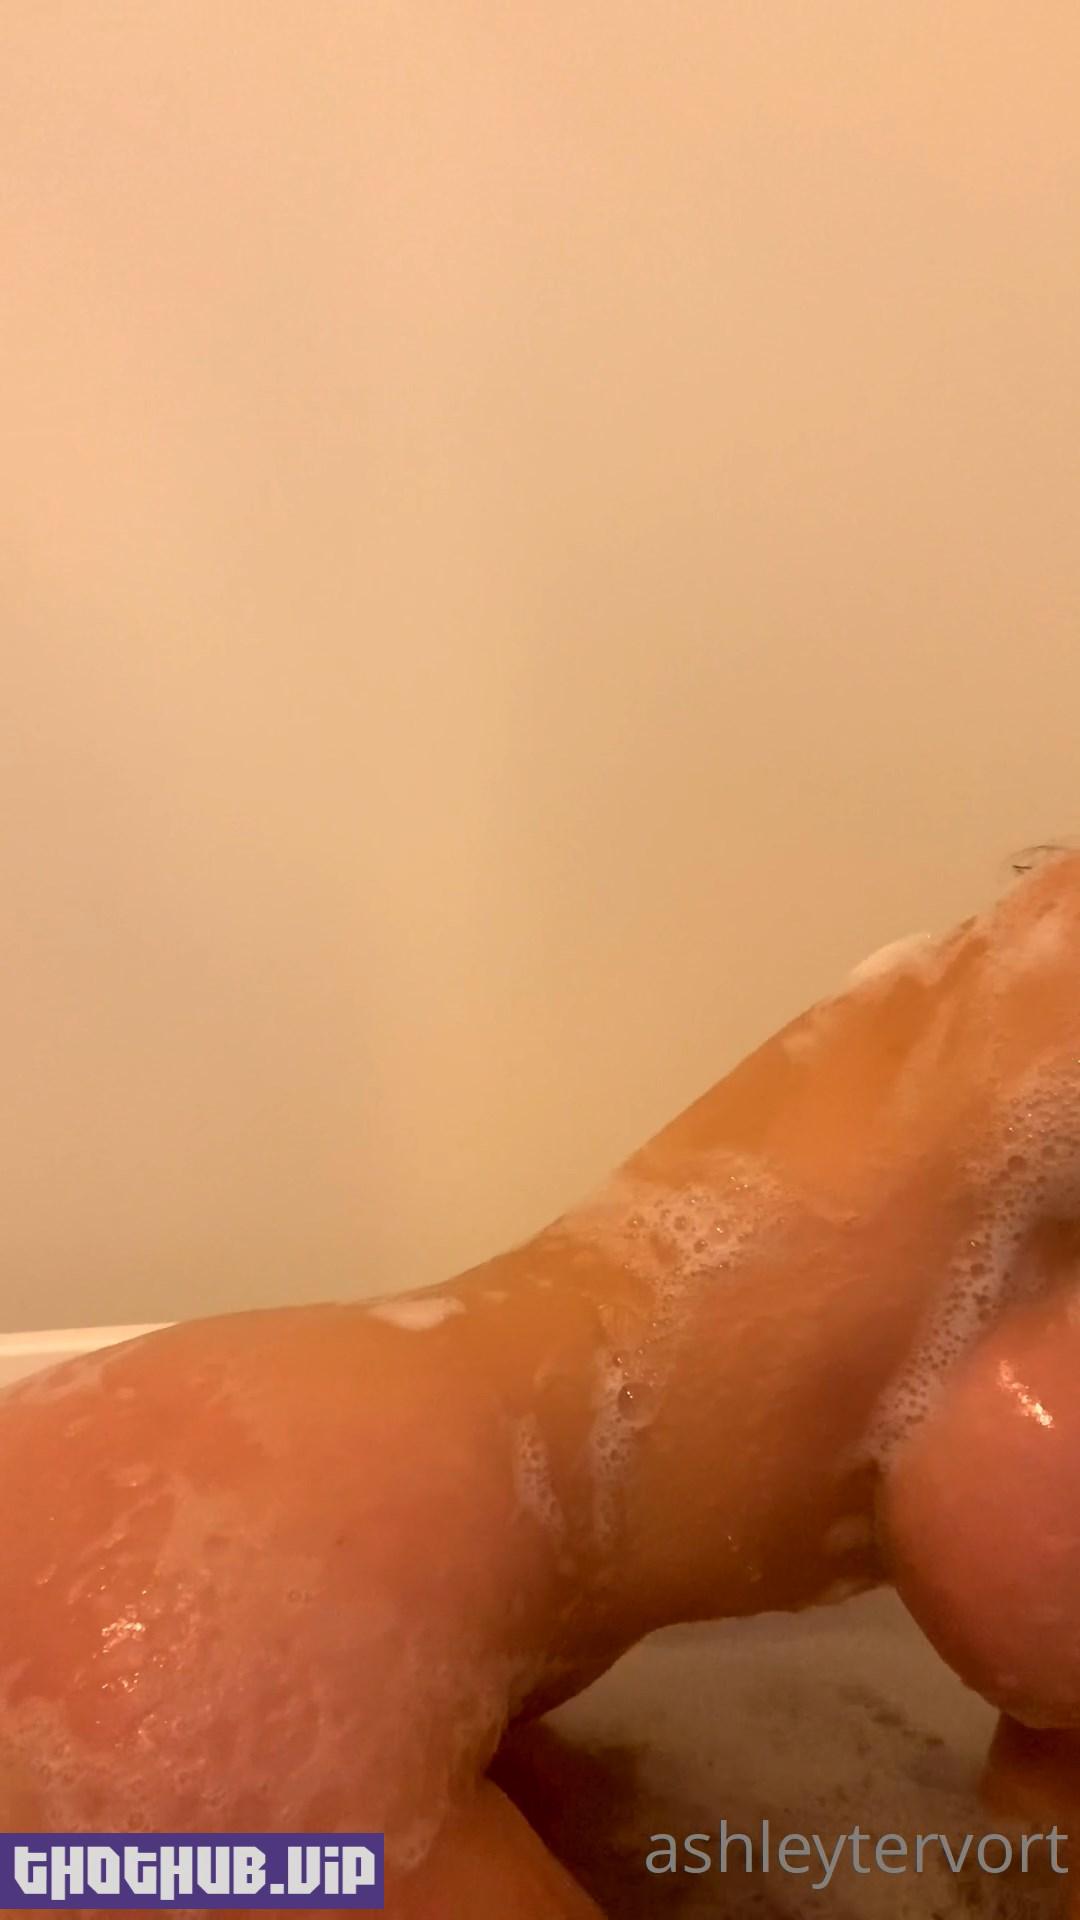 Ashley Tervort Nude Bath Wash Onlyfans Video Leaked